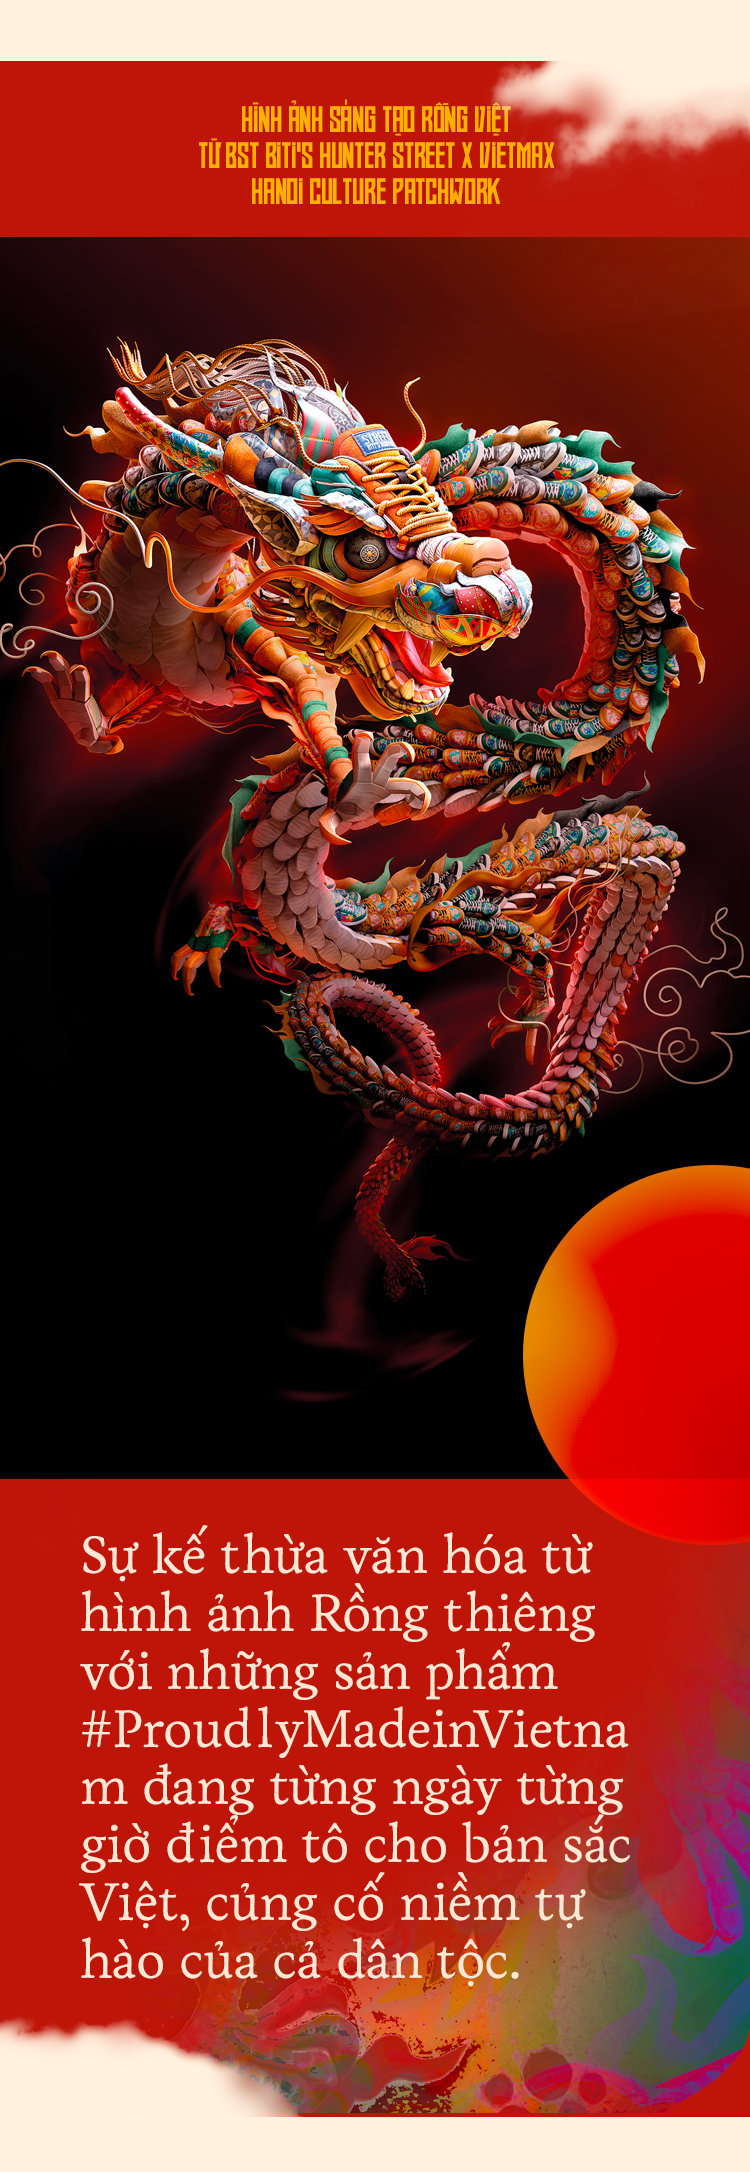 Rồng rắn lên mây là một hình ảnh quen thuộc với người Việt Nam. Nó mang đến cảm giác linh hoạt và động lực cho người chơi vì chúng ta phải tìm cách leo lên đỉnh với rắn và rồng. Hãy xem hình ảnh để đắm mình trong những pha chiến đấu kịch tính của trò chơi này.